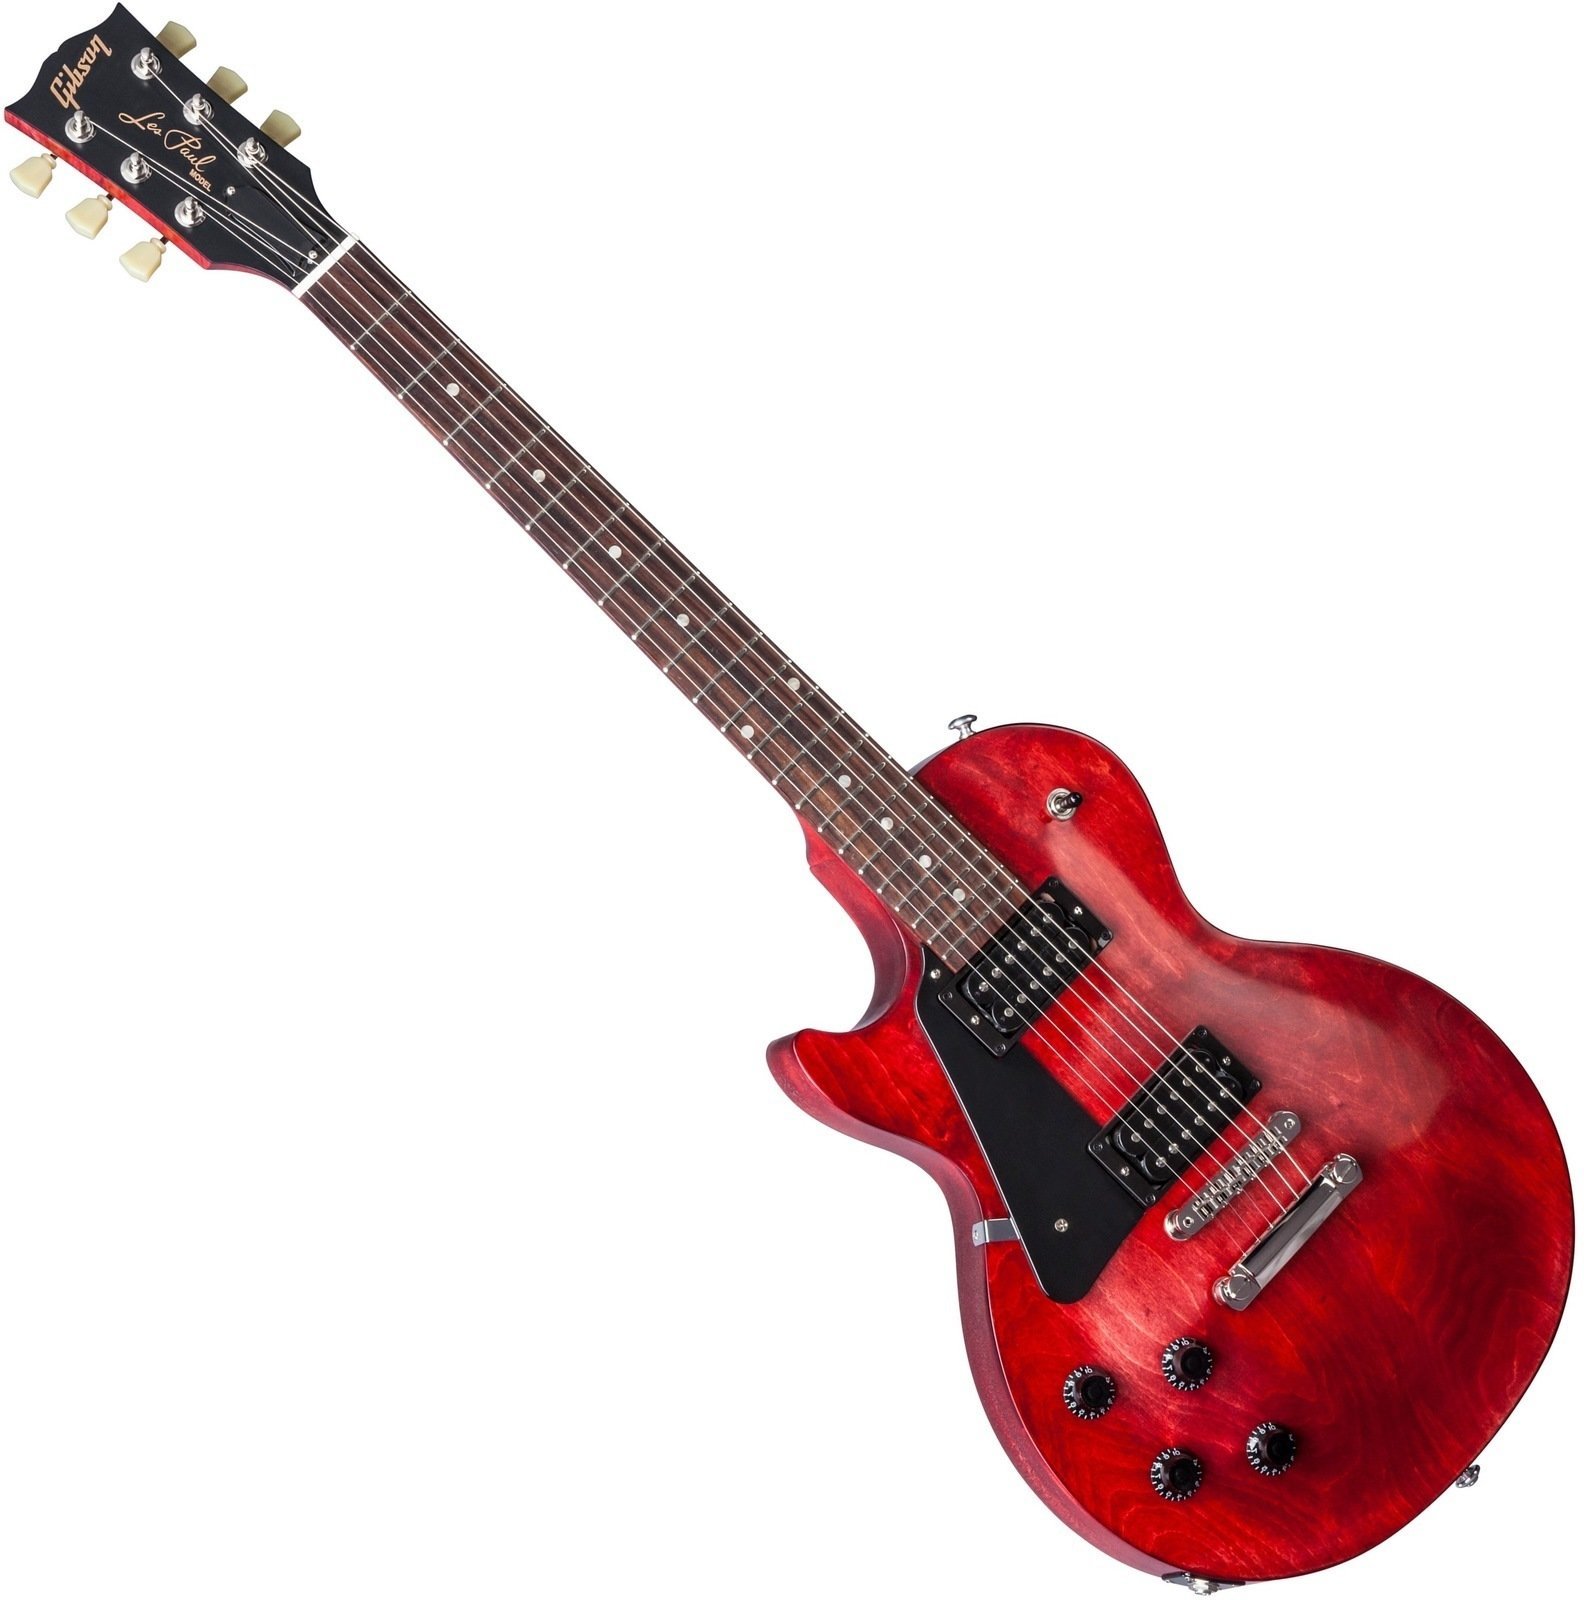 Ηλεκτρική Κιθάρα για Αριστερόχειρες Gibson Les Paul Faded T 2017 Left Handed Worn Cherry